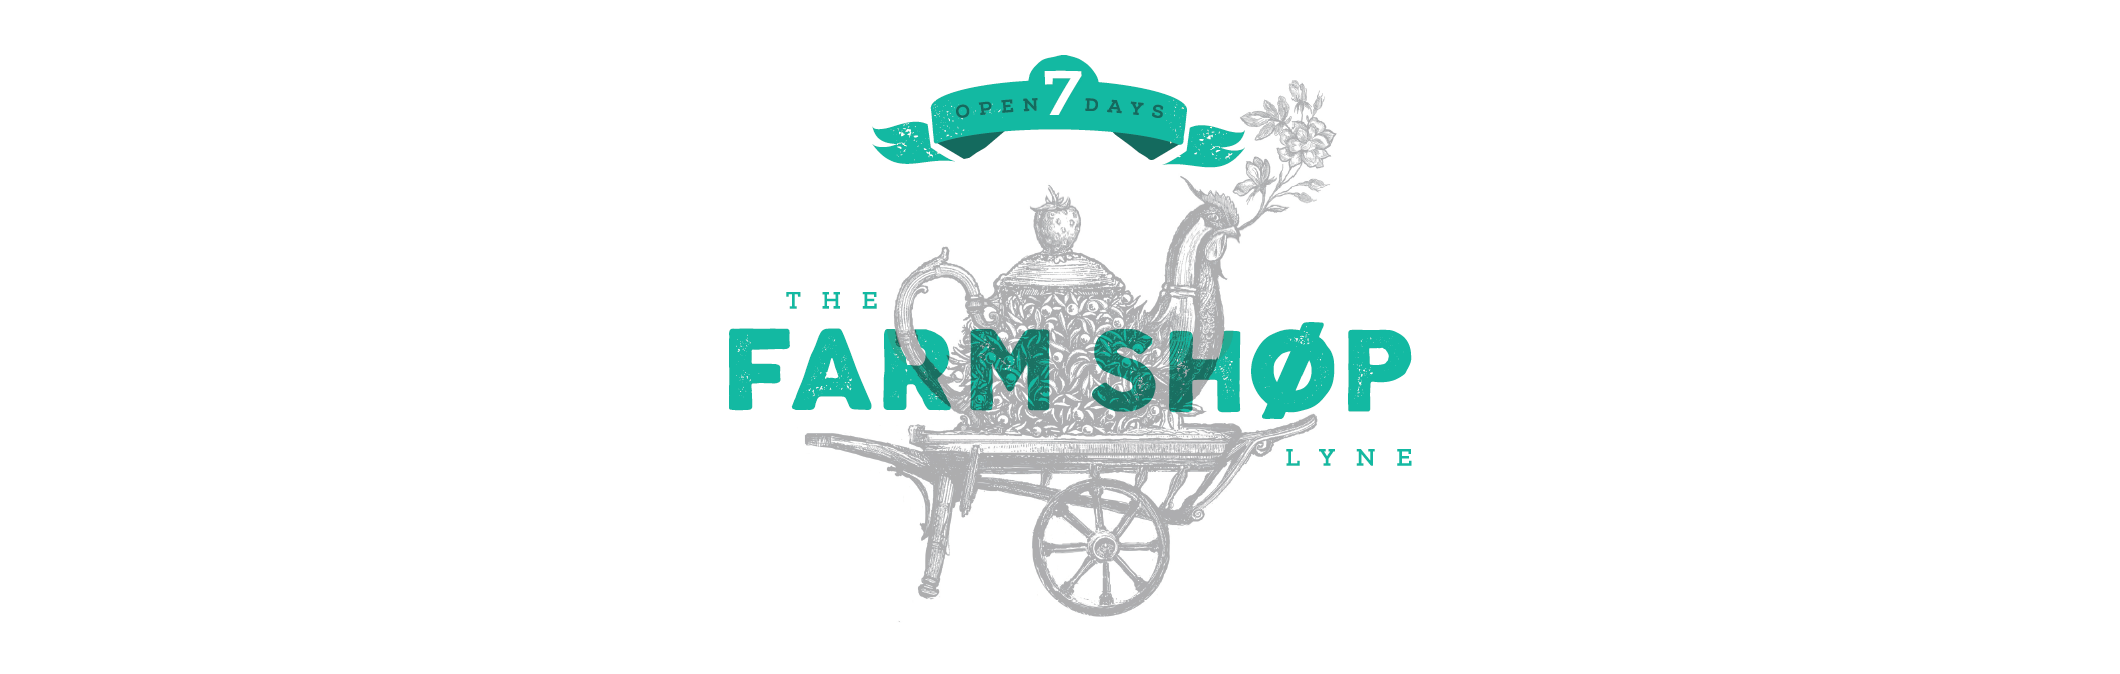 The Farm Shop at Lyne homepage logo slide